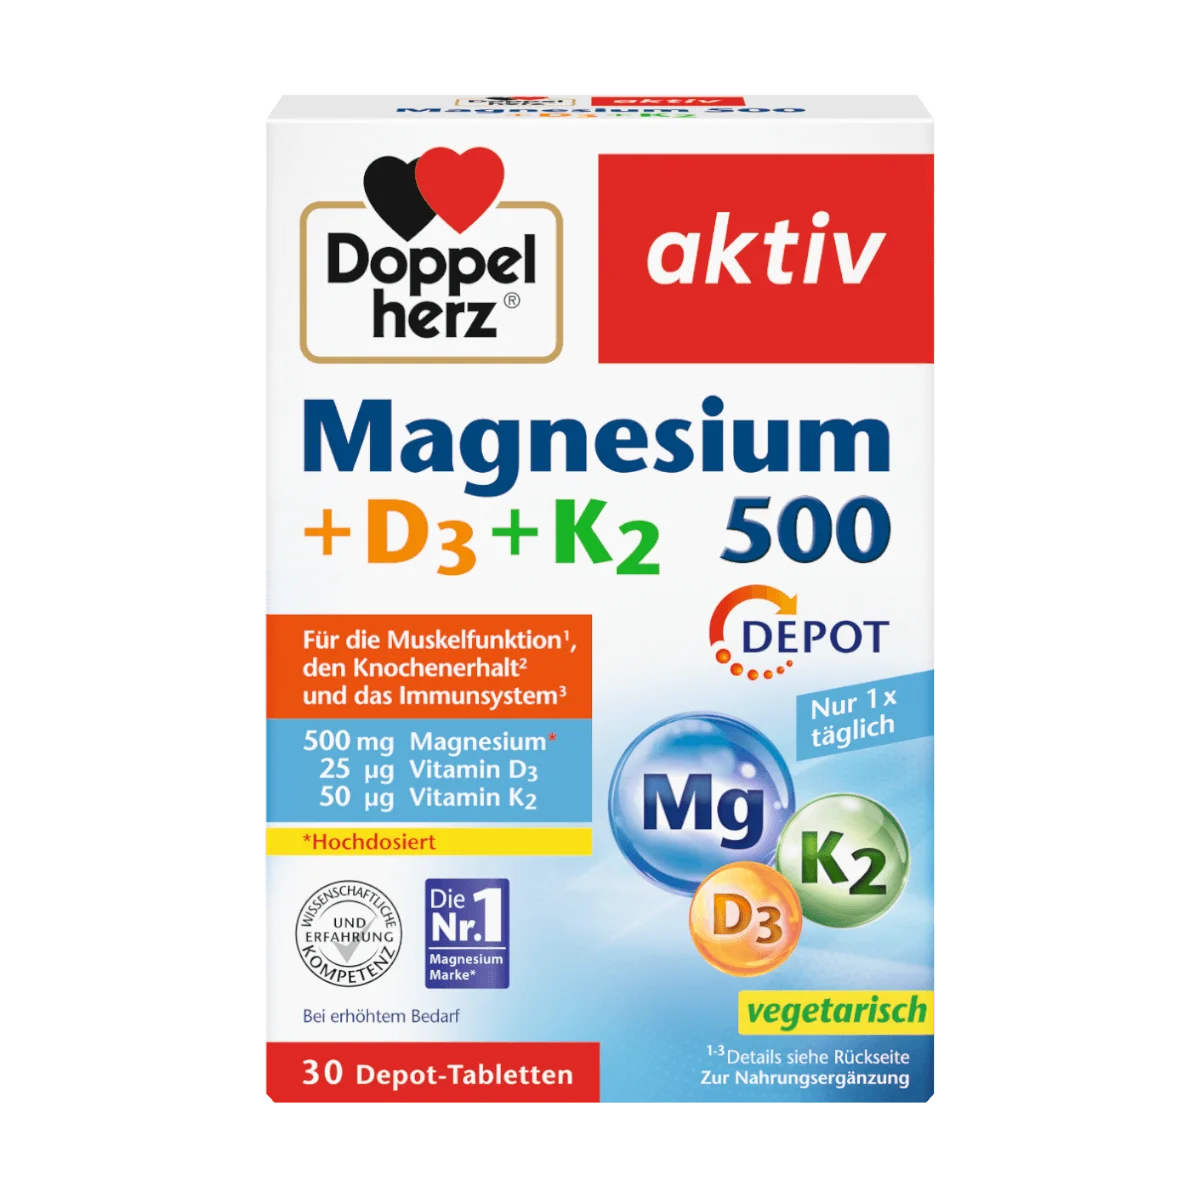 Doppelherz Magnesium 500 + D3 + K2 Depot, 30 Tbl